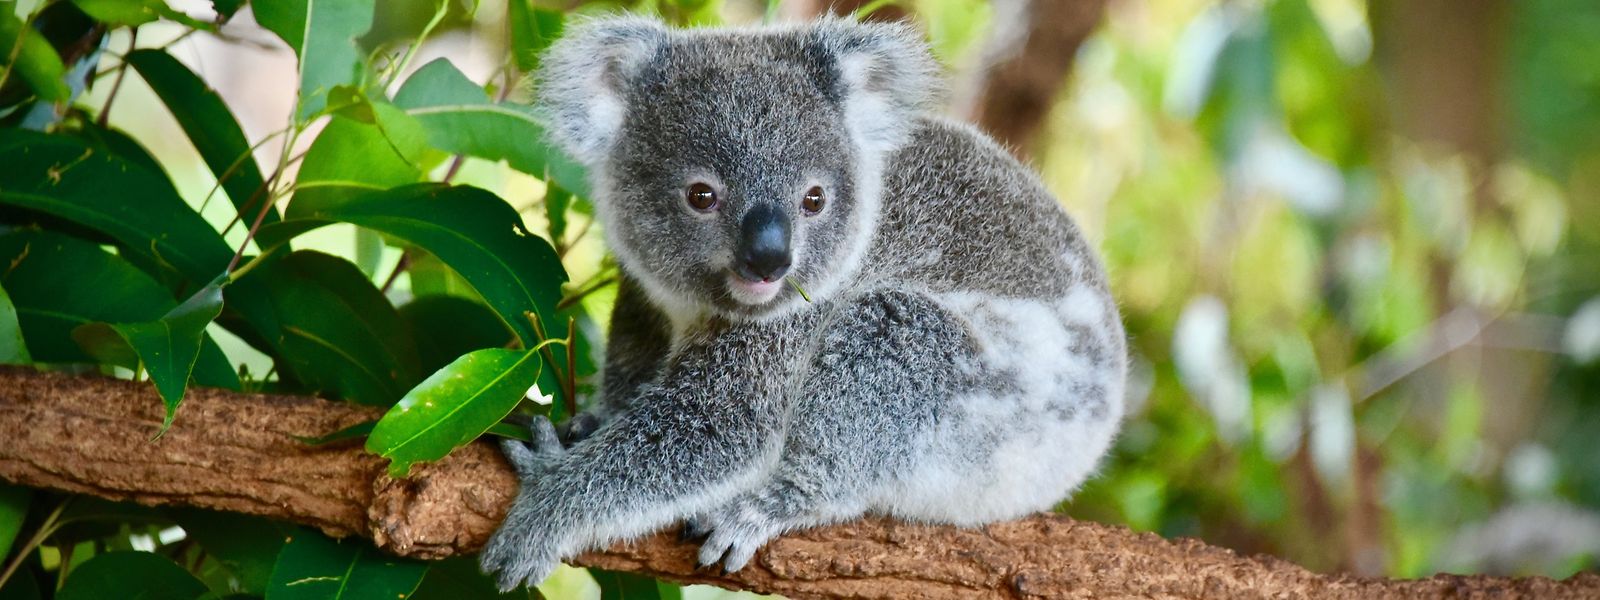 Wenn keine Schutzmaßnahmen ergriffen werden, sterben im australischen Gliedstaat New South Wales die Koalas bis spätestens 2050 aus.